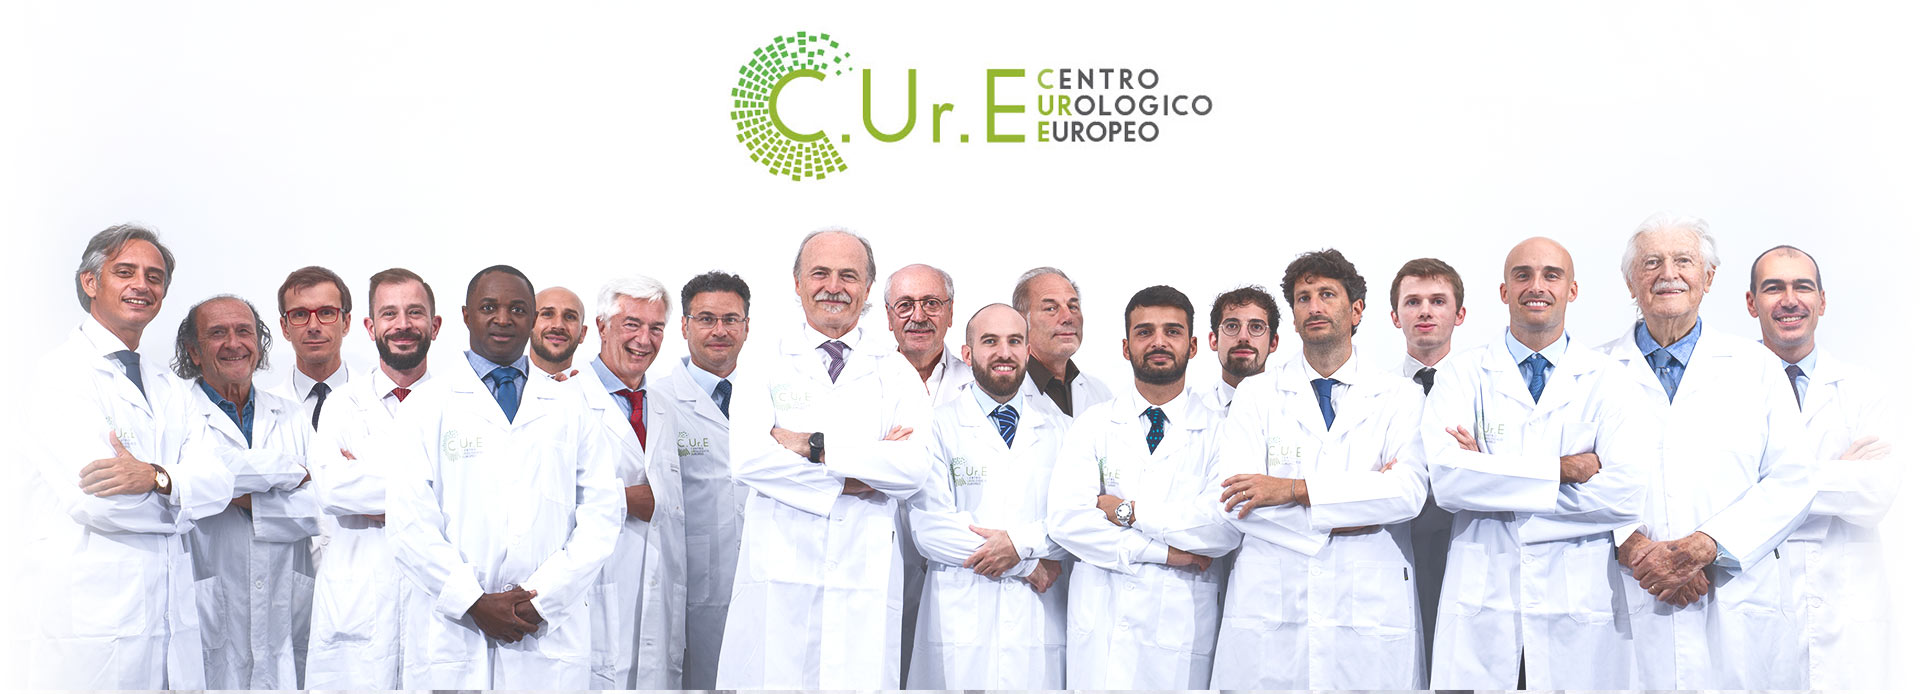 gruppo cure centro urologico europeo dott gatti lorenzo